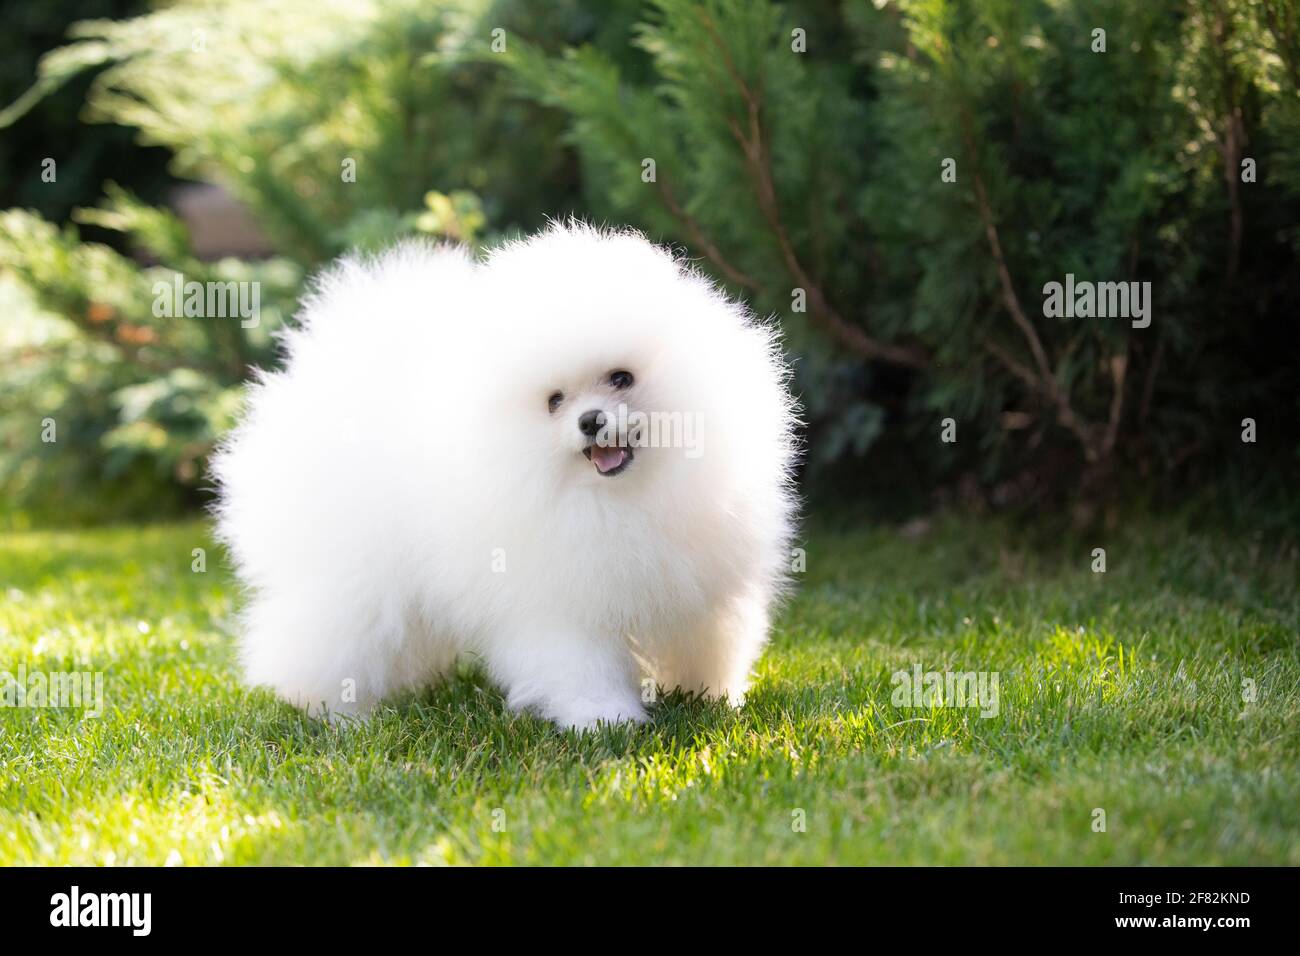 Cane, cucciolo di razza spitz Pomeraniano di colore bianco giocando su un prato verde Foto Stock